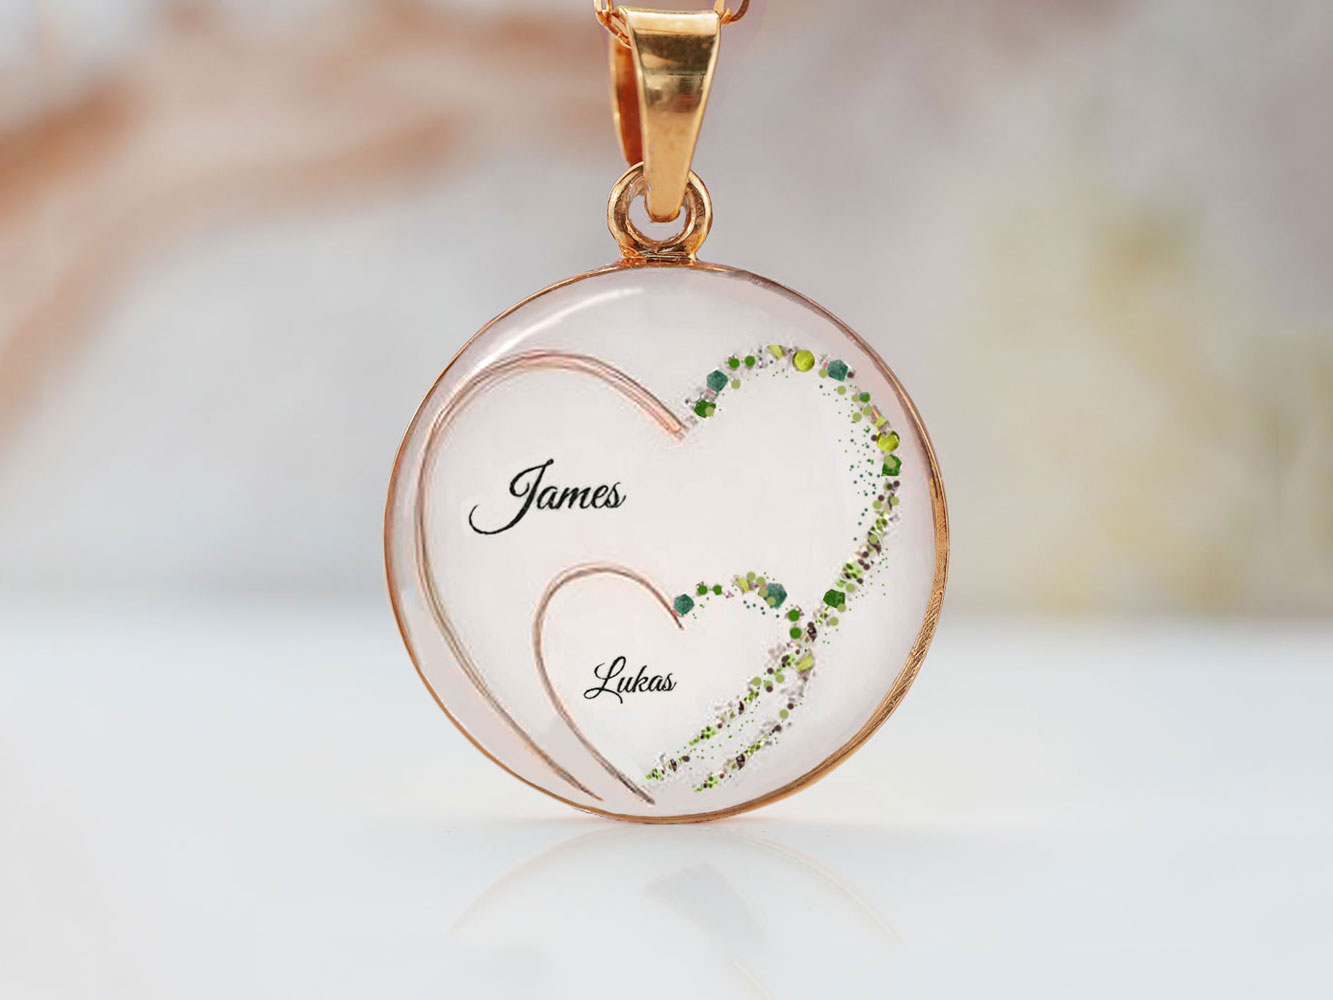 Breastmilk Jewelry Necklace Heart To Heart Pendant Keepsakemoms (1)